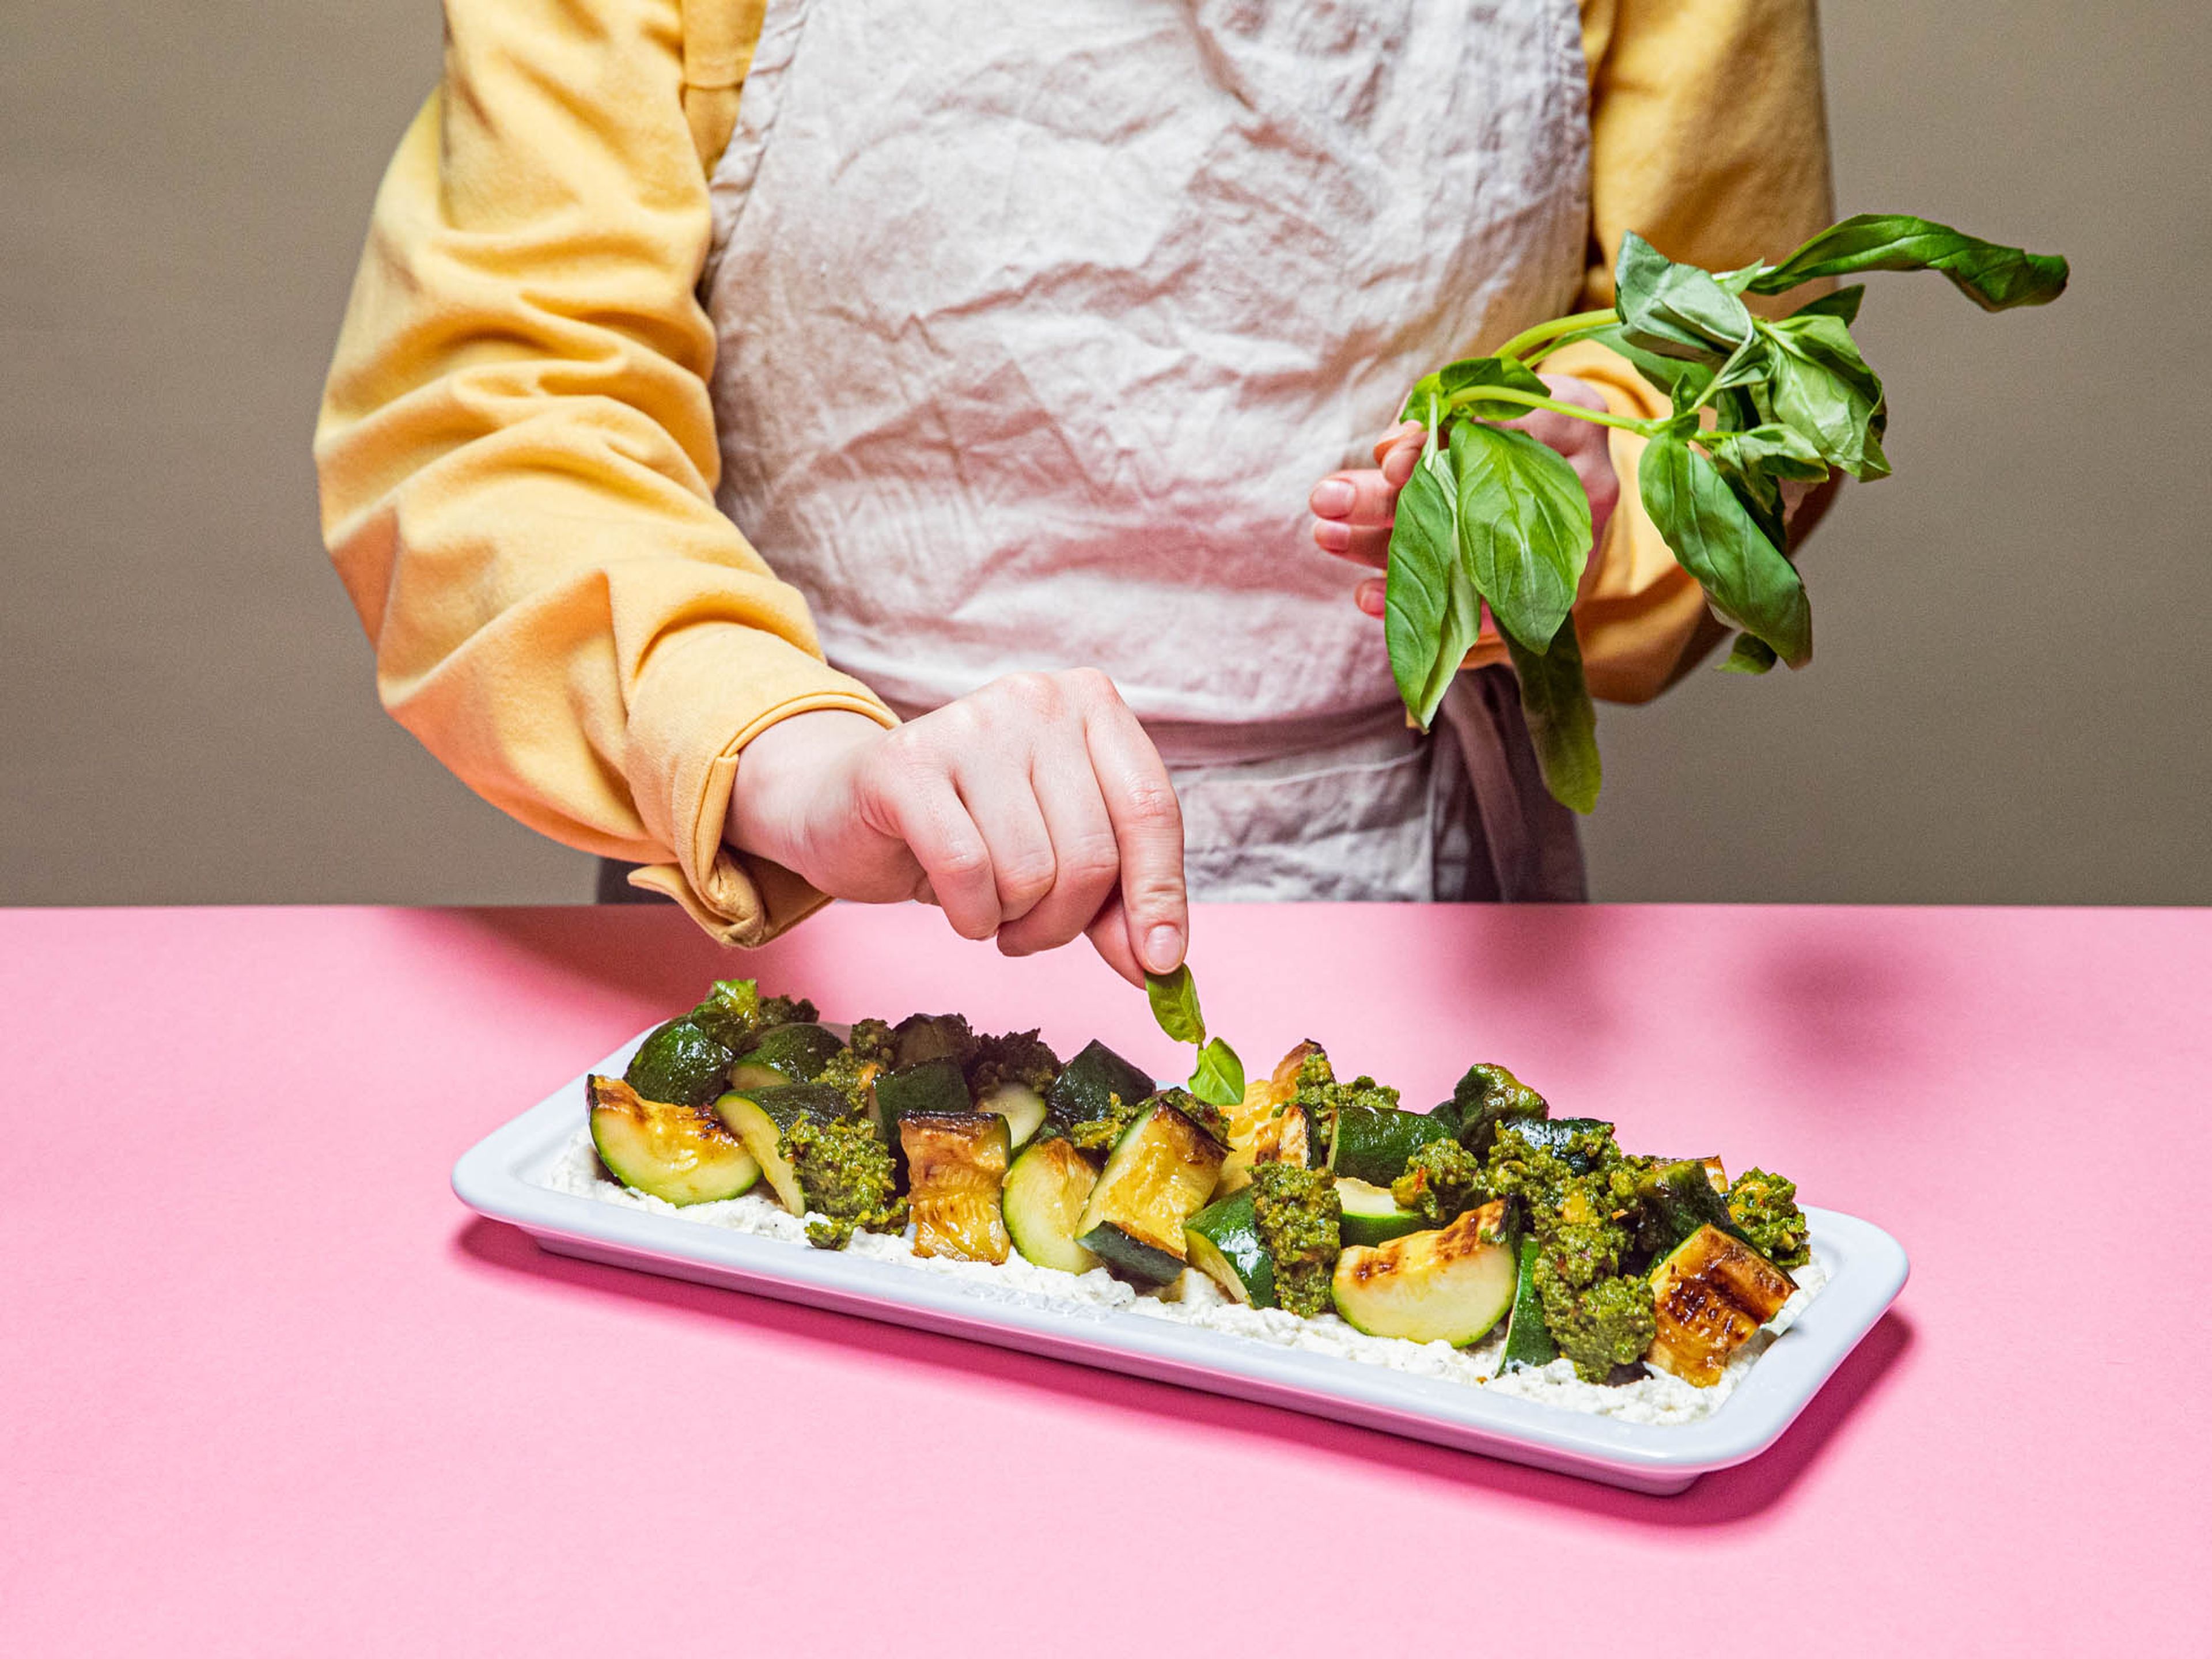 Ricotta auf einem Teller anrichten, die Zucchinistückchen darauf verteilen und mit dem Pesto beträufeln. Mit dem beiseitegelegten Basilikum, Petersilie und Haselnüssen bestreuen. Mit Salz und Pfeffer abschmecken und genießen!